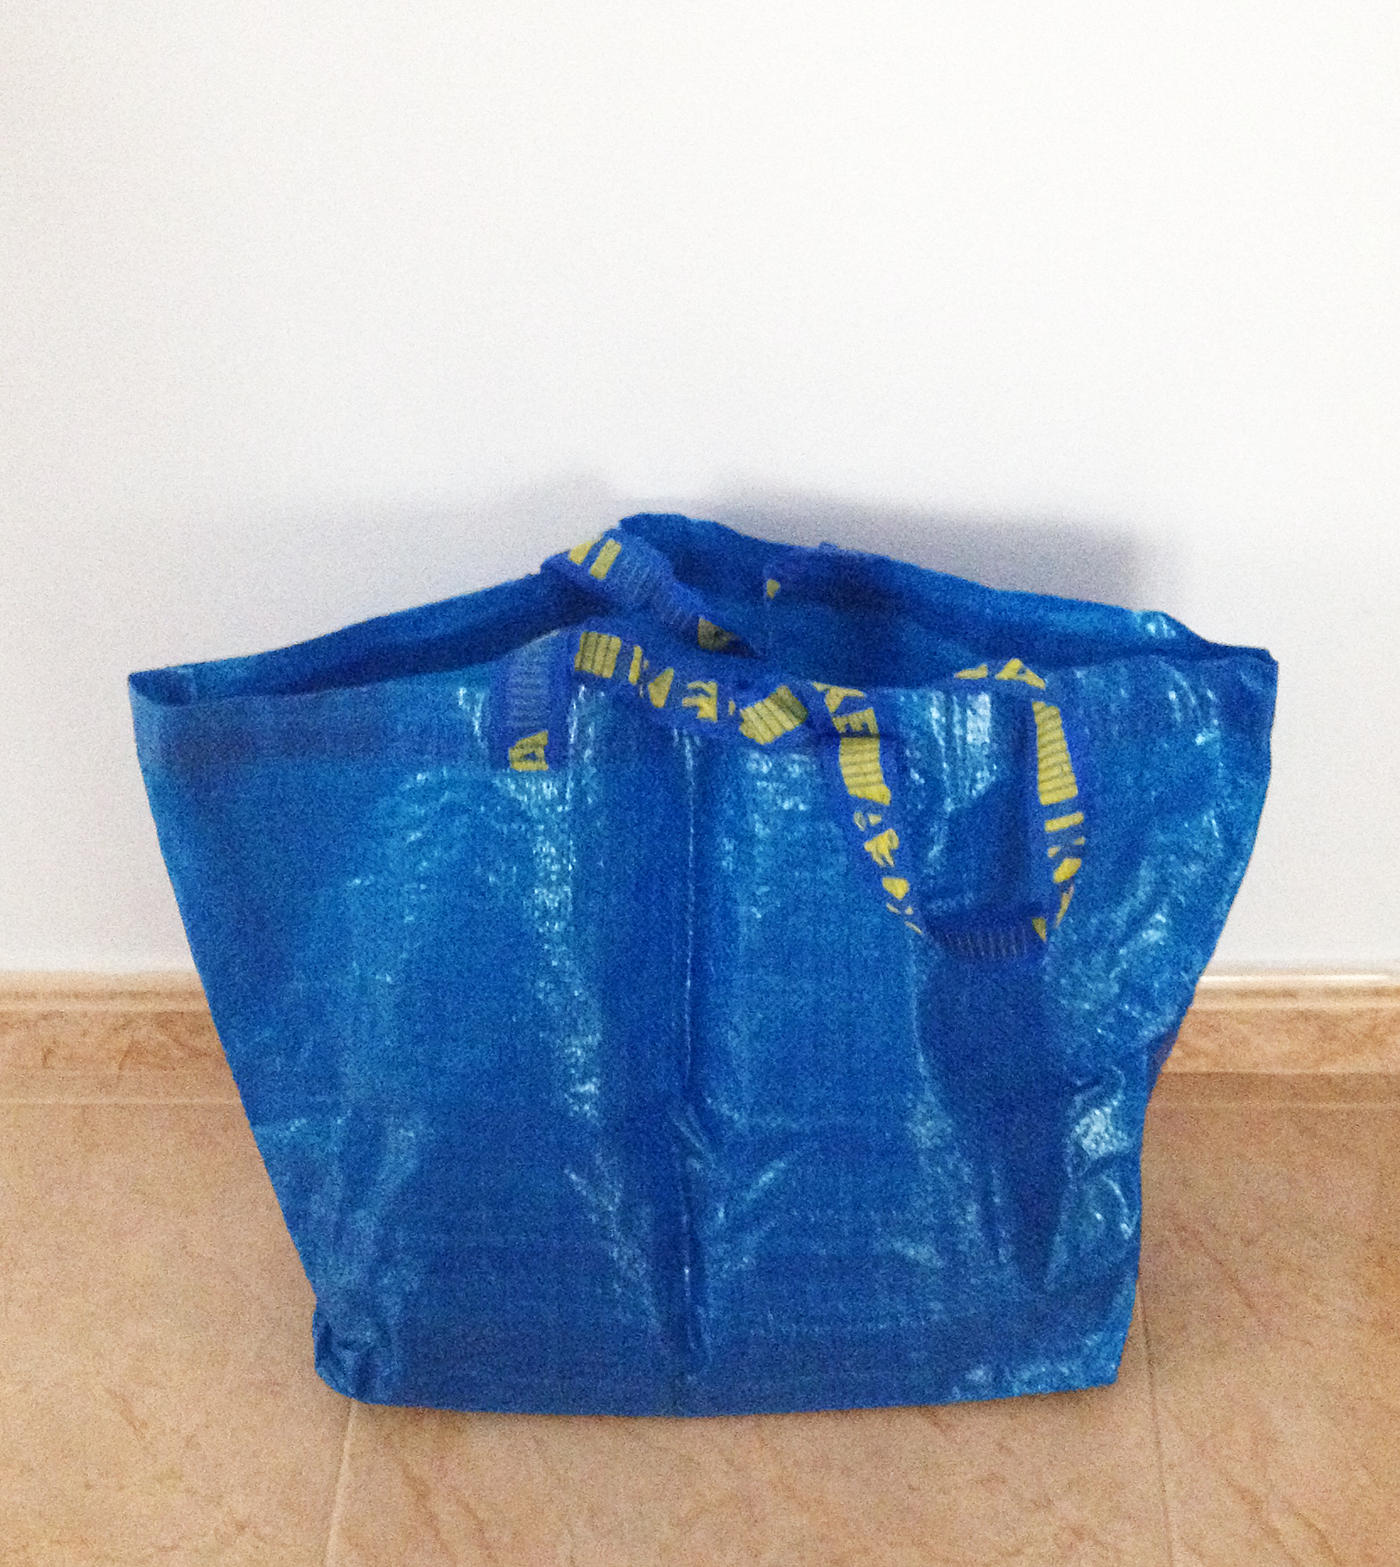 La bolsa azul de Ikea, el cesto de la Birkin y la malla de la compra de mi  abuela. | by Raquel Martín de Almagro | El Cuarteto de Alejandria | Medium